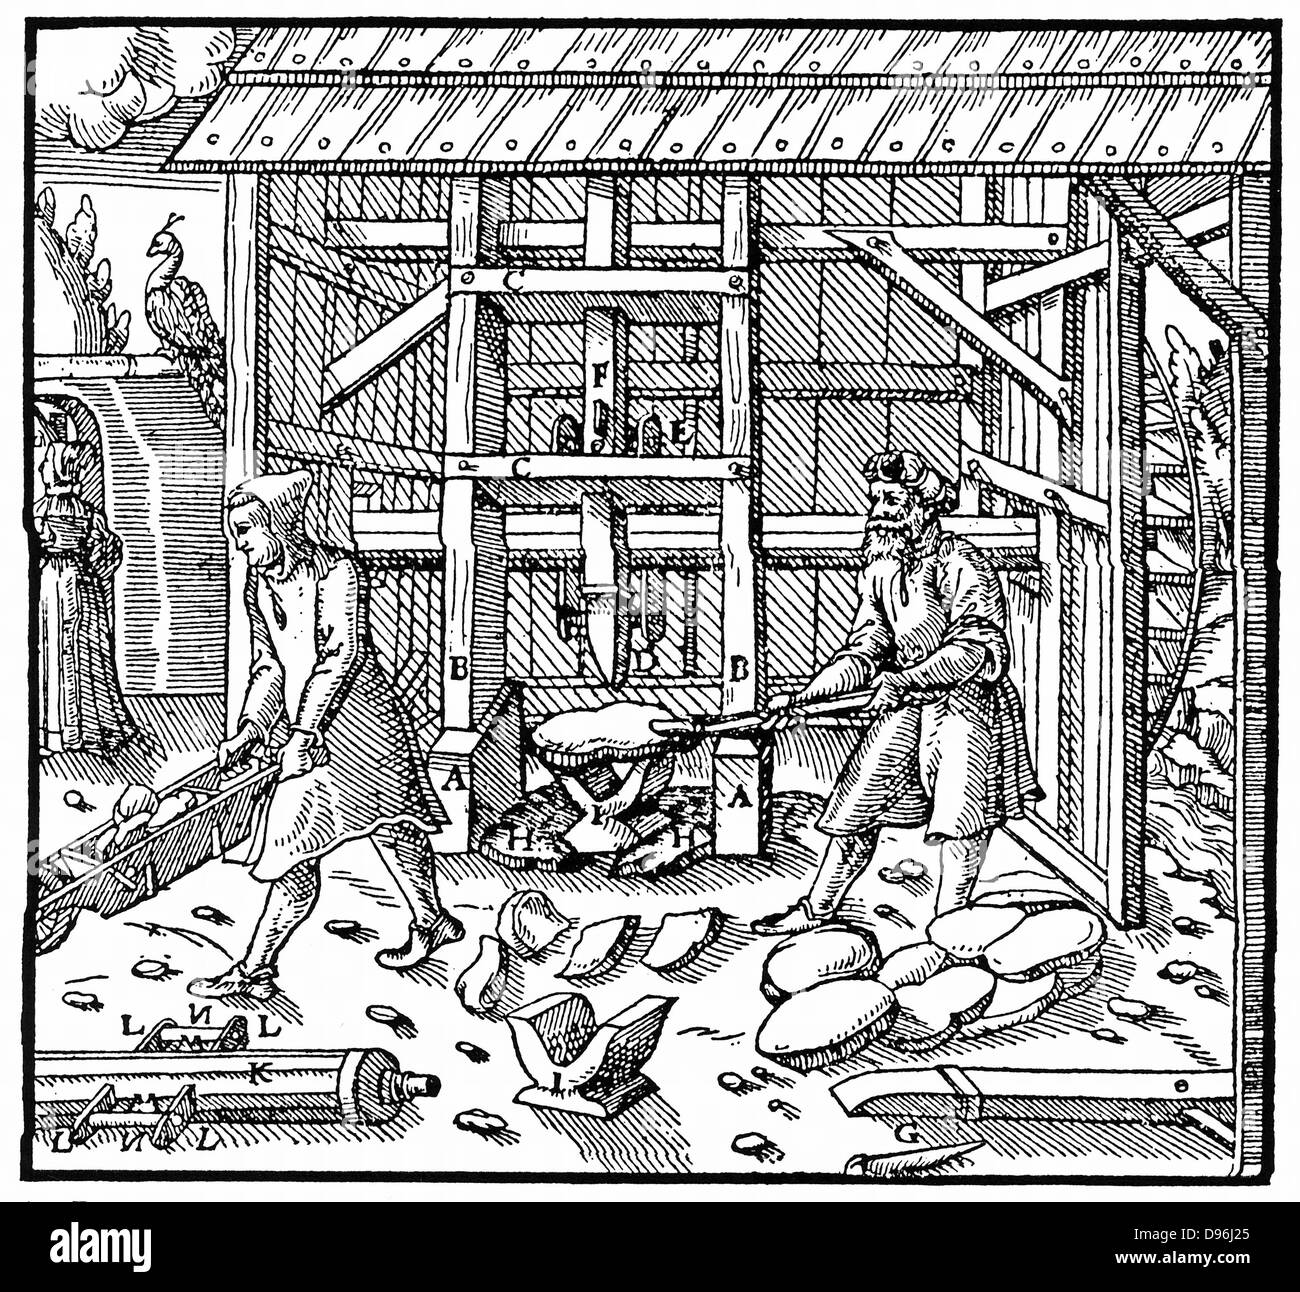 Stempel für das Brechen von Kupfer cupellation Kuchen für die weitere Verfeinerung durch Wasser Rad durch Antriebswelle angetrieben. Von Agricola 'De re matallica", Basel, 1556. Holzschnitt Stockfoto